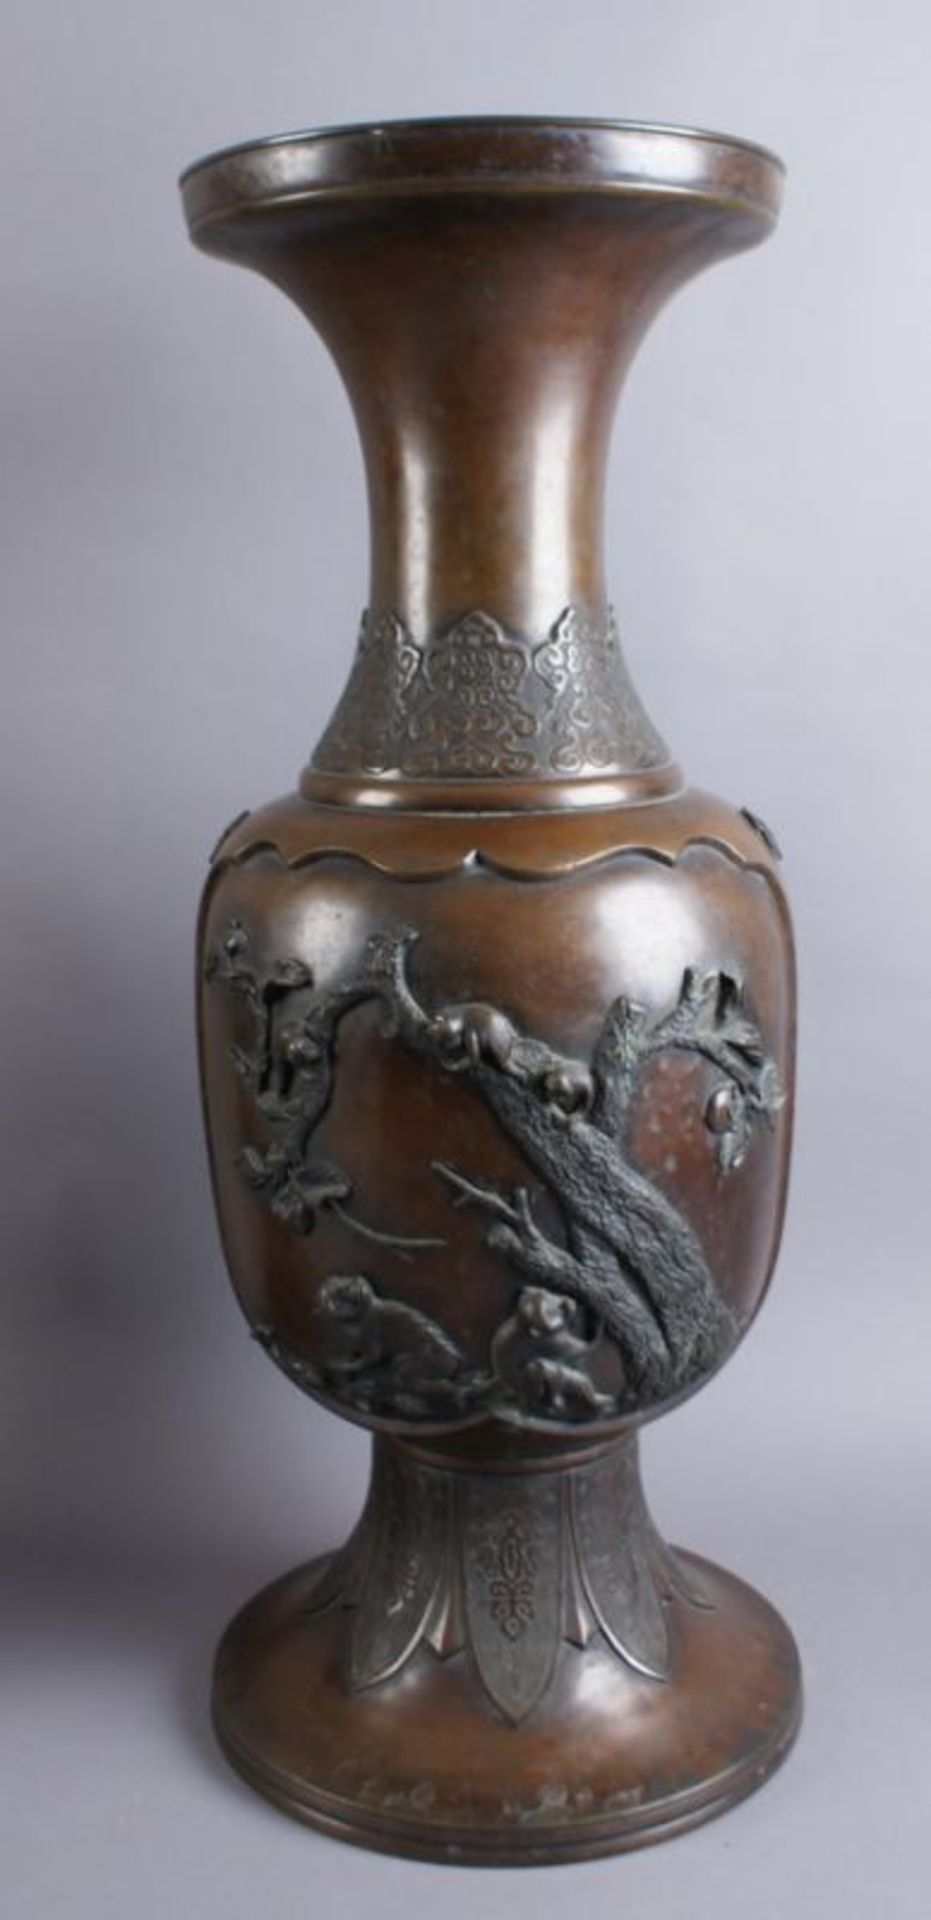 PAAR BRONZE VASEN Japan, 19. JH, zwei grosse Vasen mit Reliefdekor, Darstellung von spielenden Affen - Bild 2 aus 11